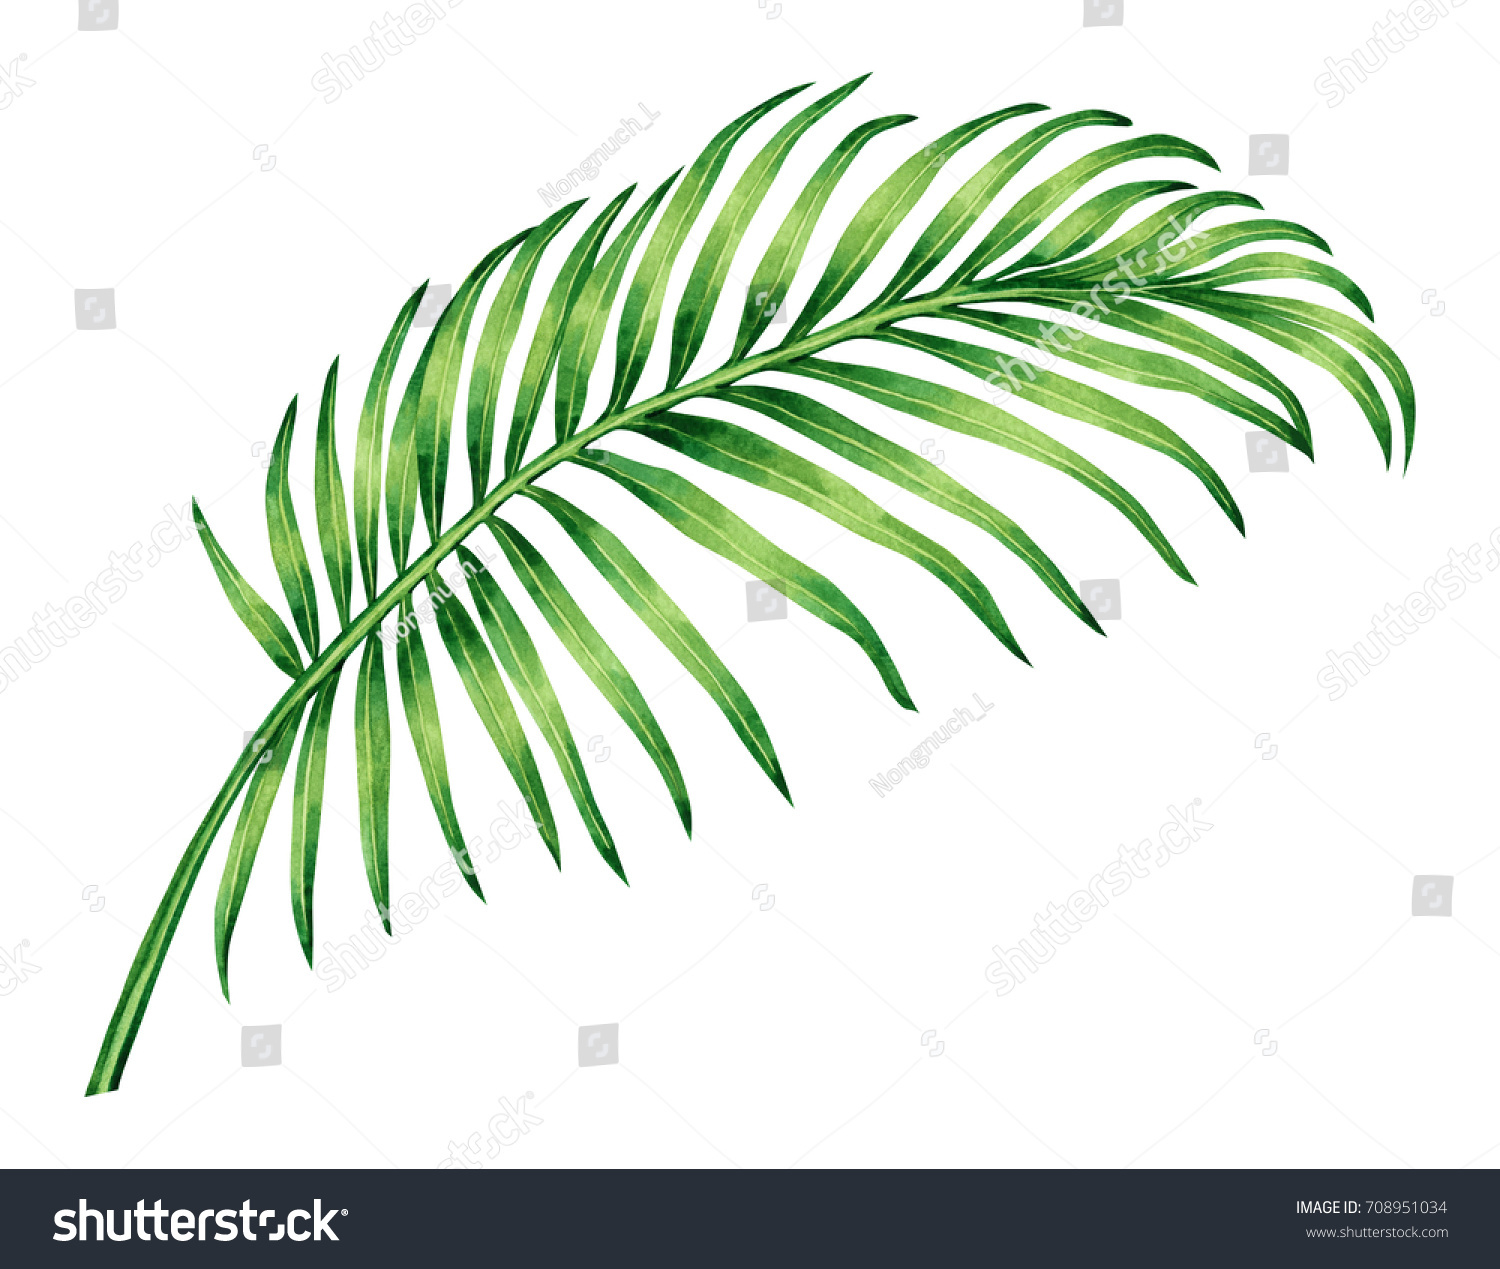 Как нарисовать листья пальмы